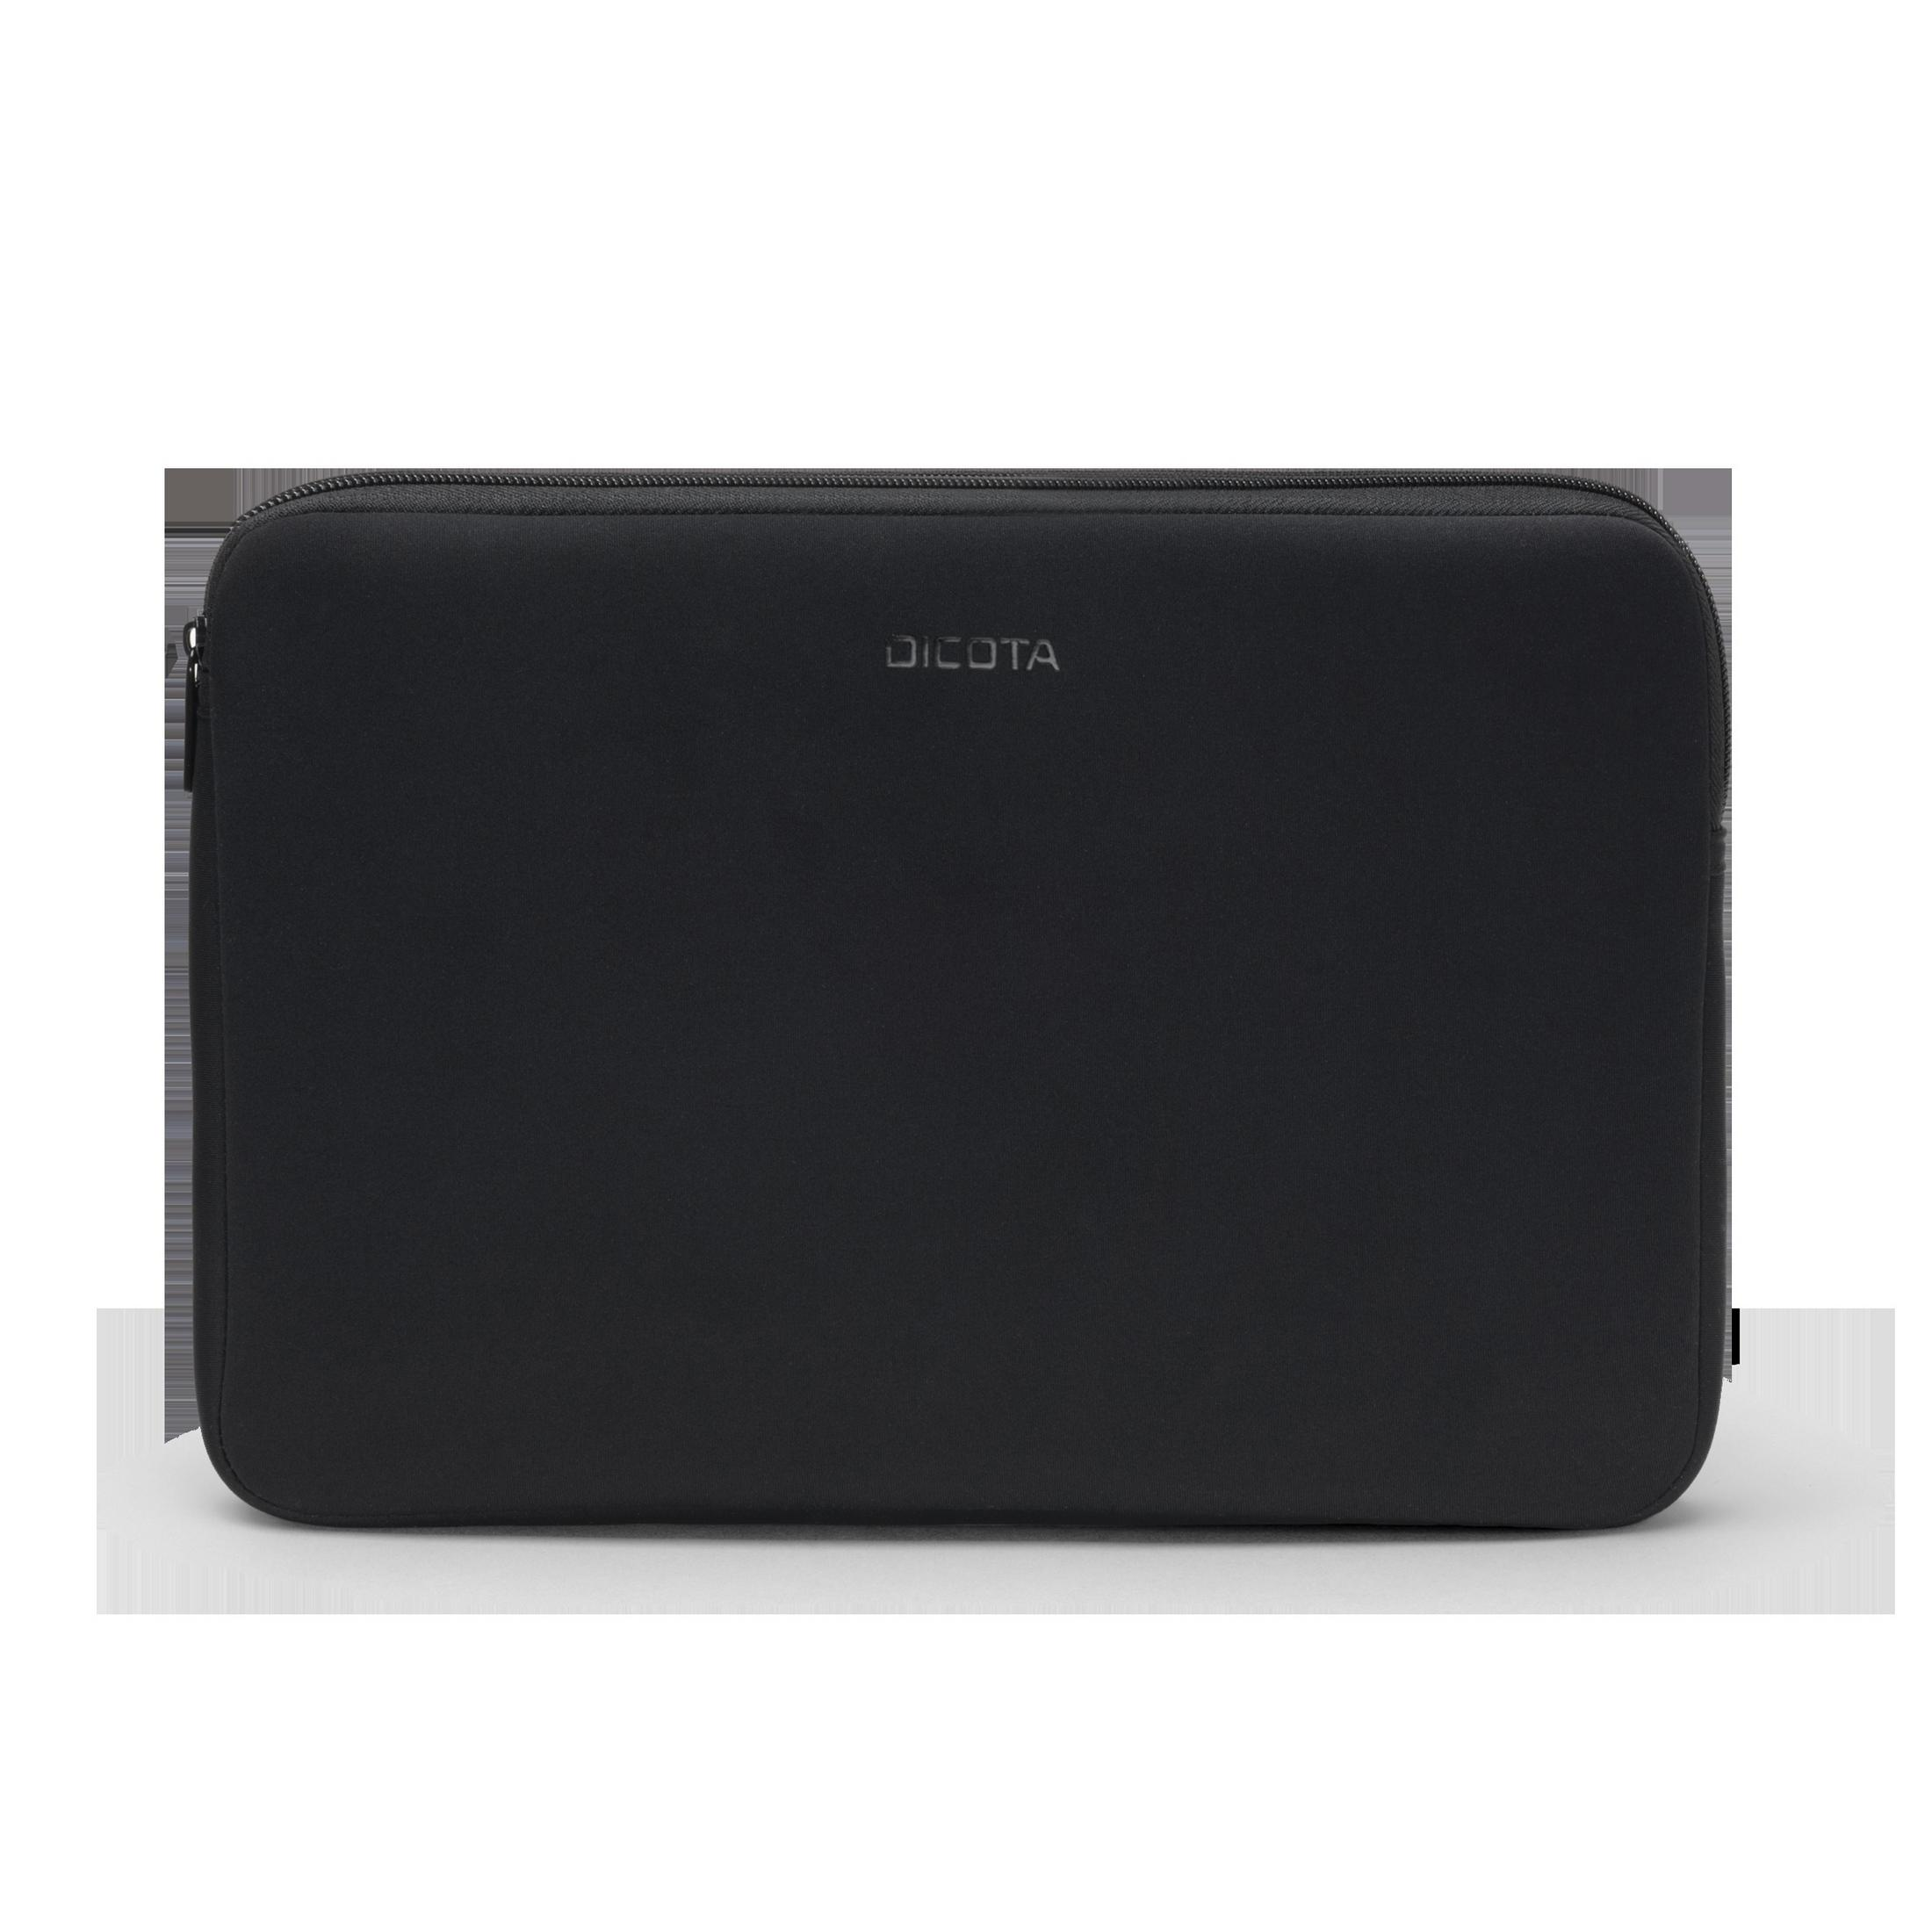 DICOTA D31189 PERFECT Sleeve SKIN BLACK Neopren, Notebooktasche für Universal Schwarz 16-17.3